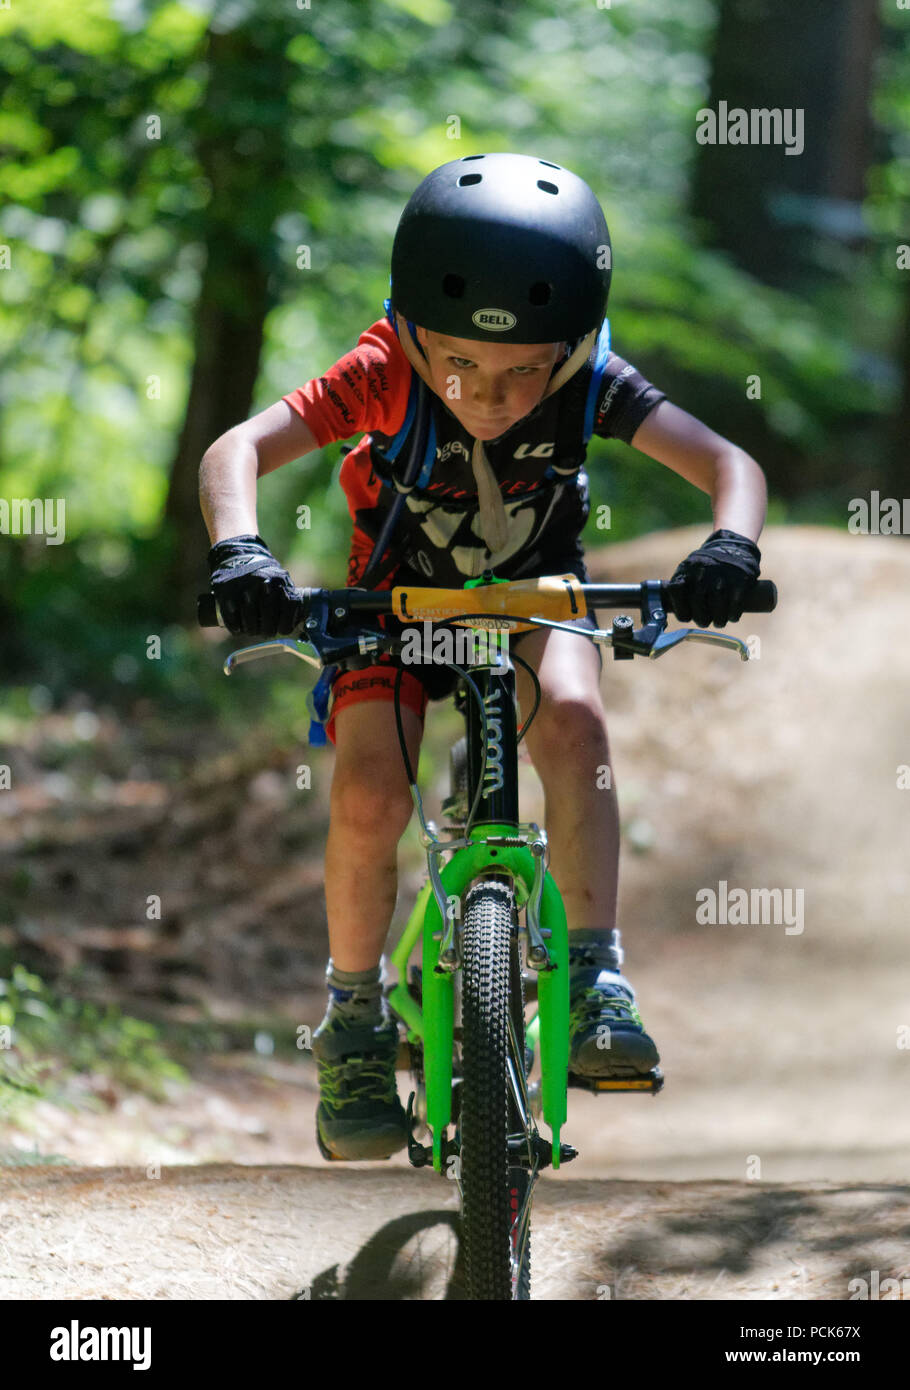 Un jeune garçon (6 ans), équitation, vélo à la direction de l'appareil photo, Kingdom Trails, East Burke, Vermont, Etats-Unis Banque D'Images